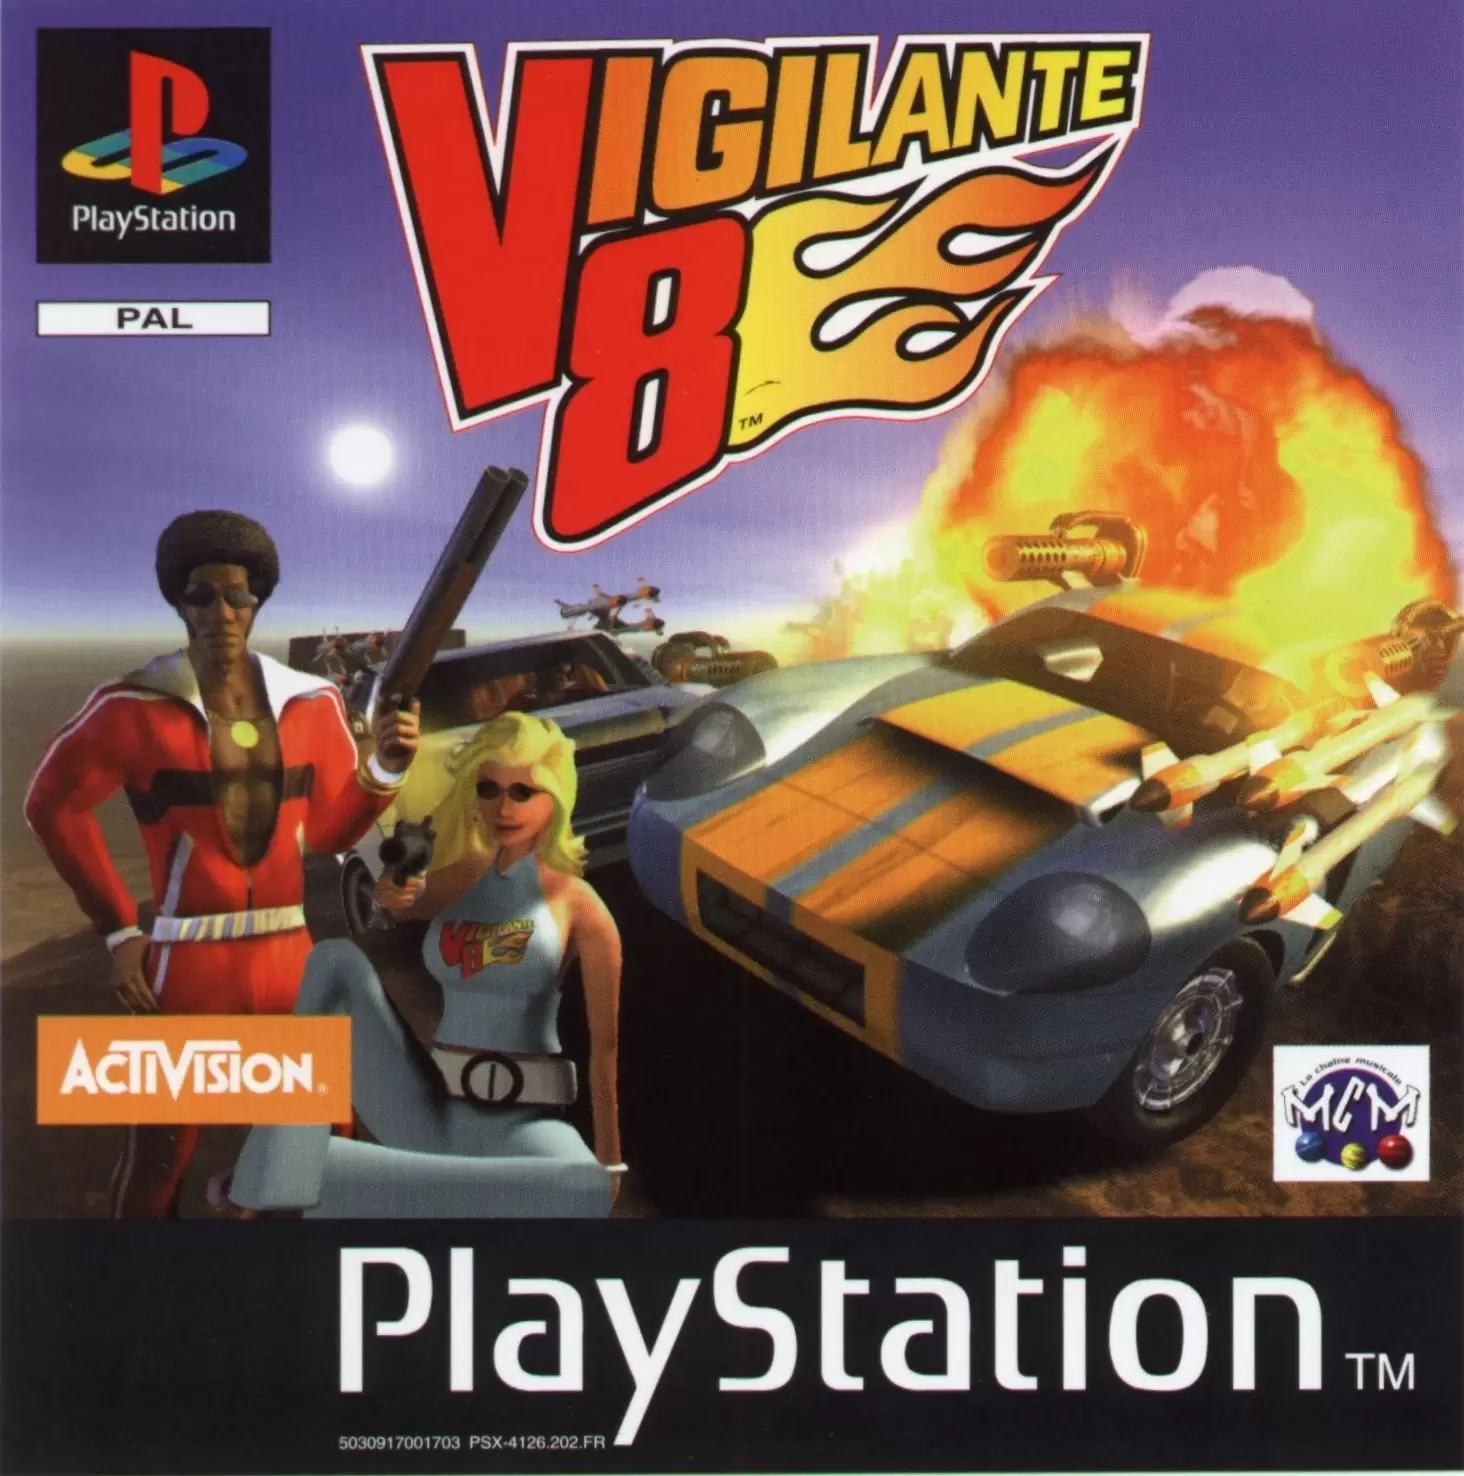 Playstation games - Vigilante 8